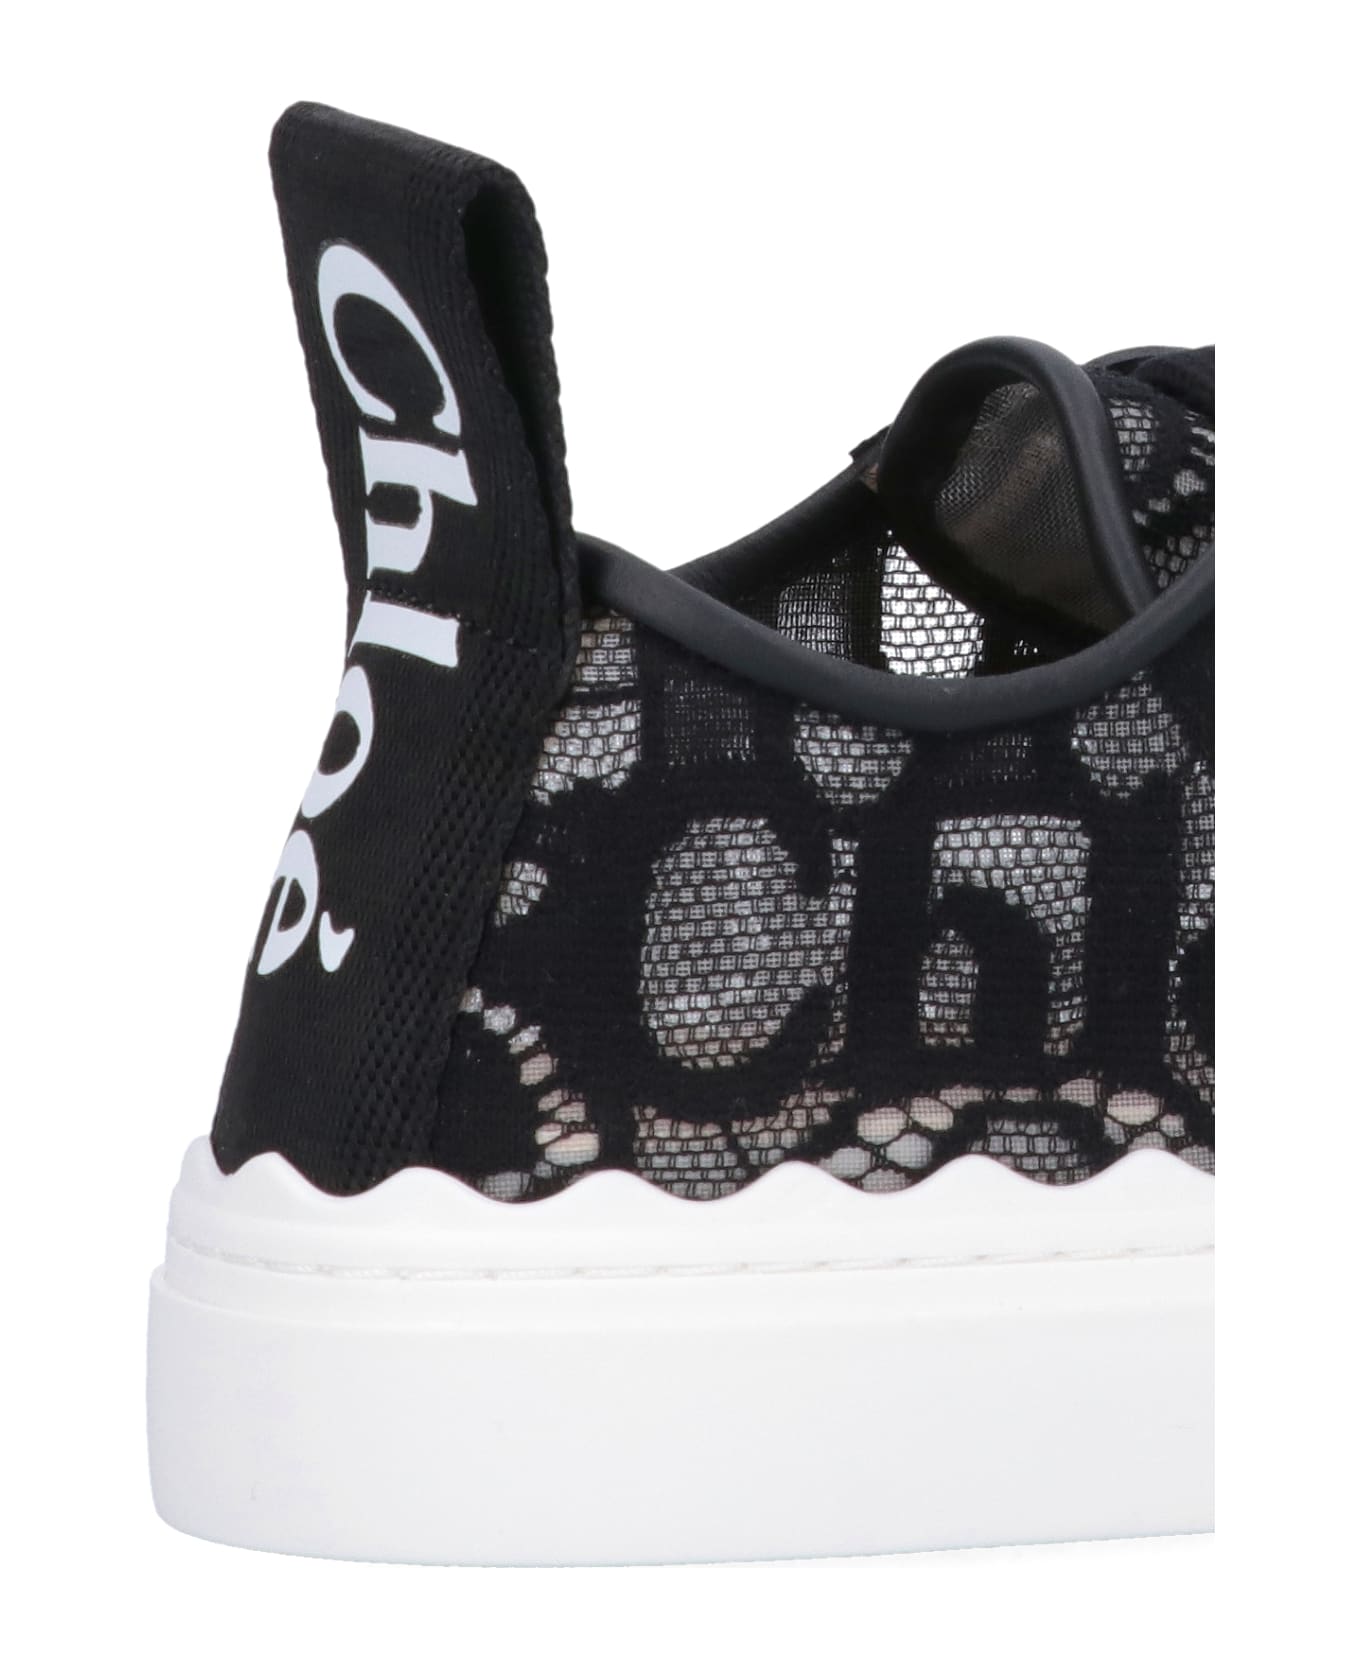 Chloé Lauren Sneakers In Black Suede - Black スニーカー